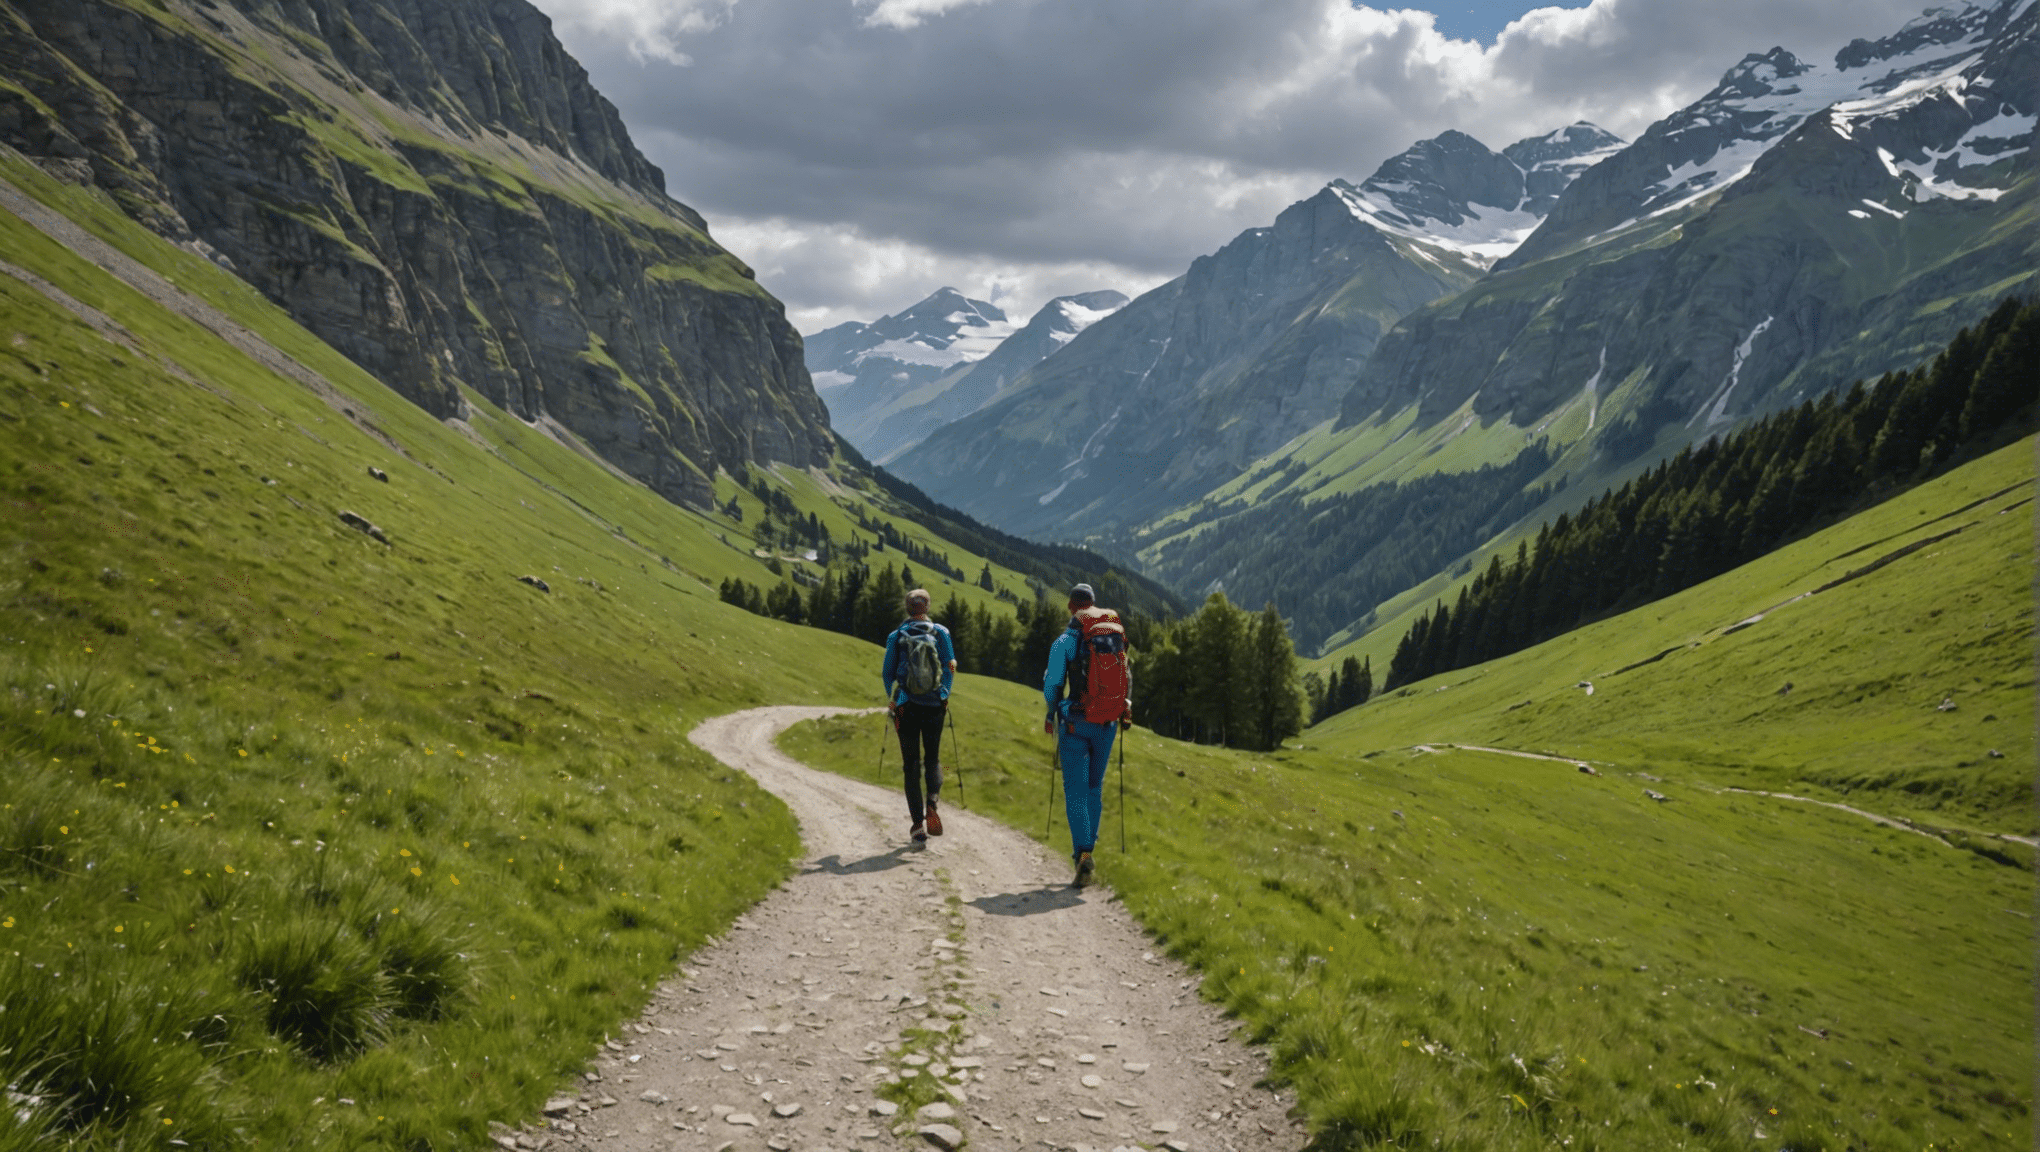 découvrez comment se préparer efficacement pour une randonnée en solitaire et profiter pleinement de votre aventure en pleine nature.